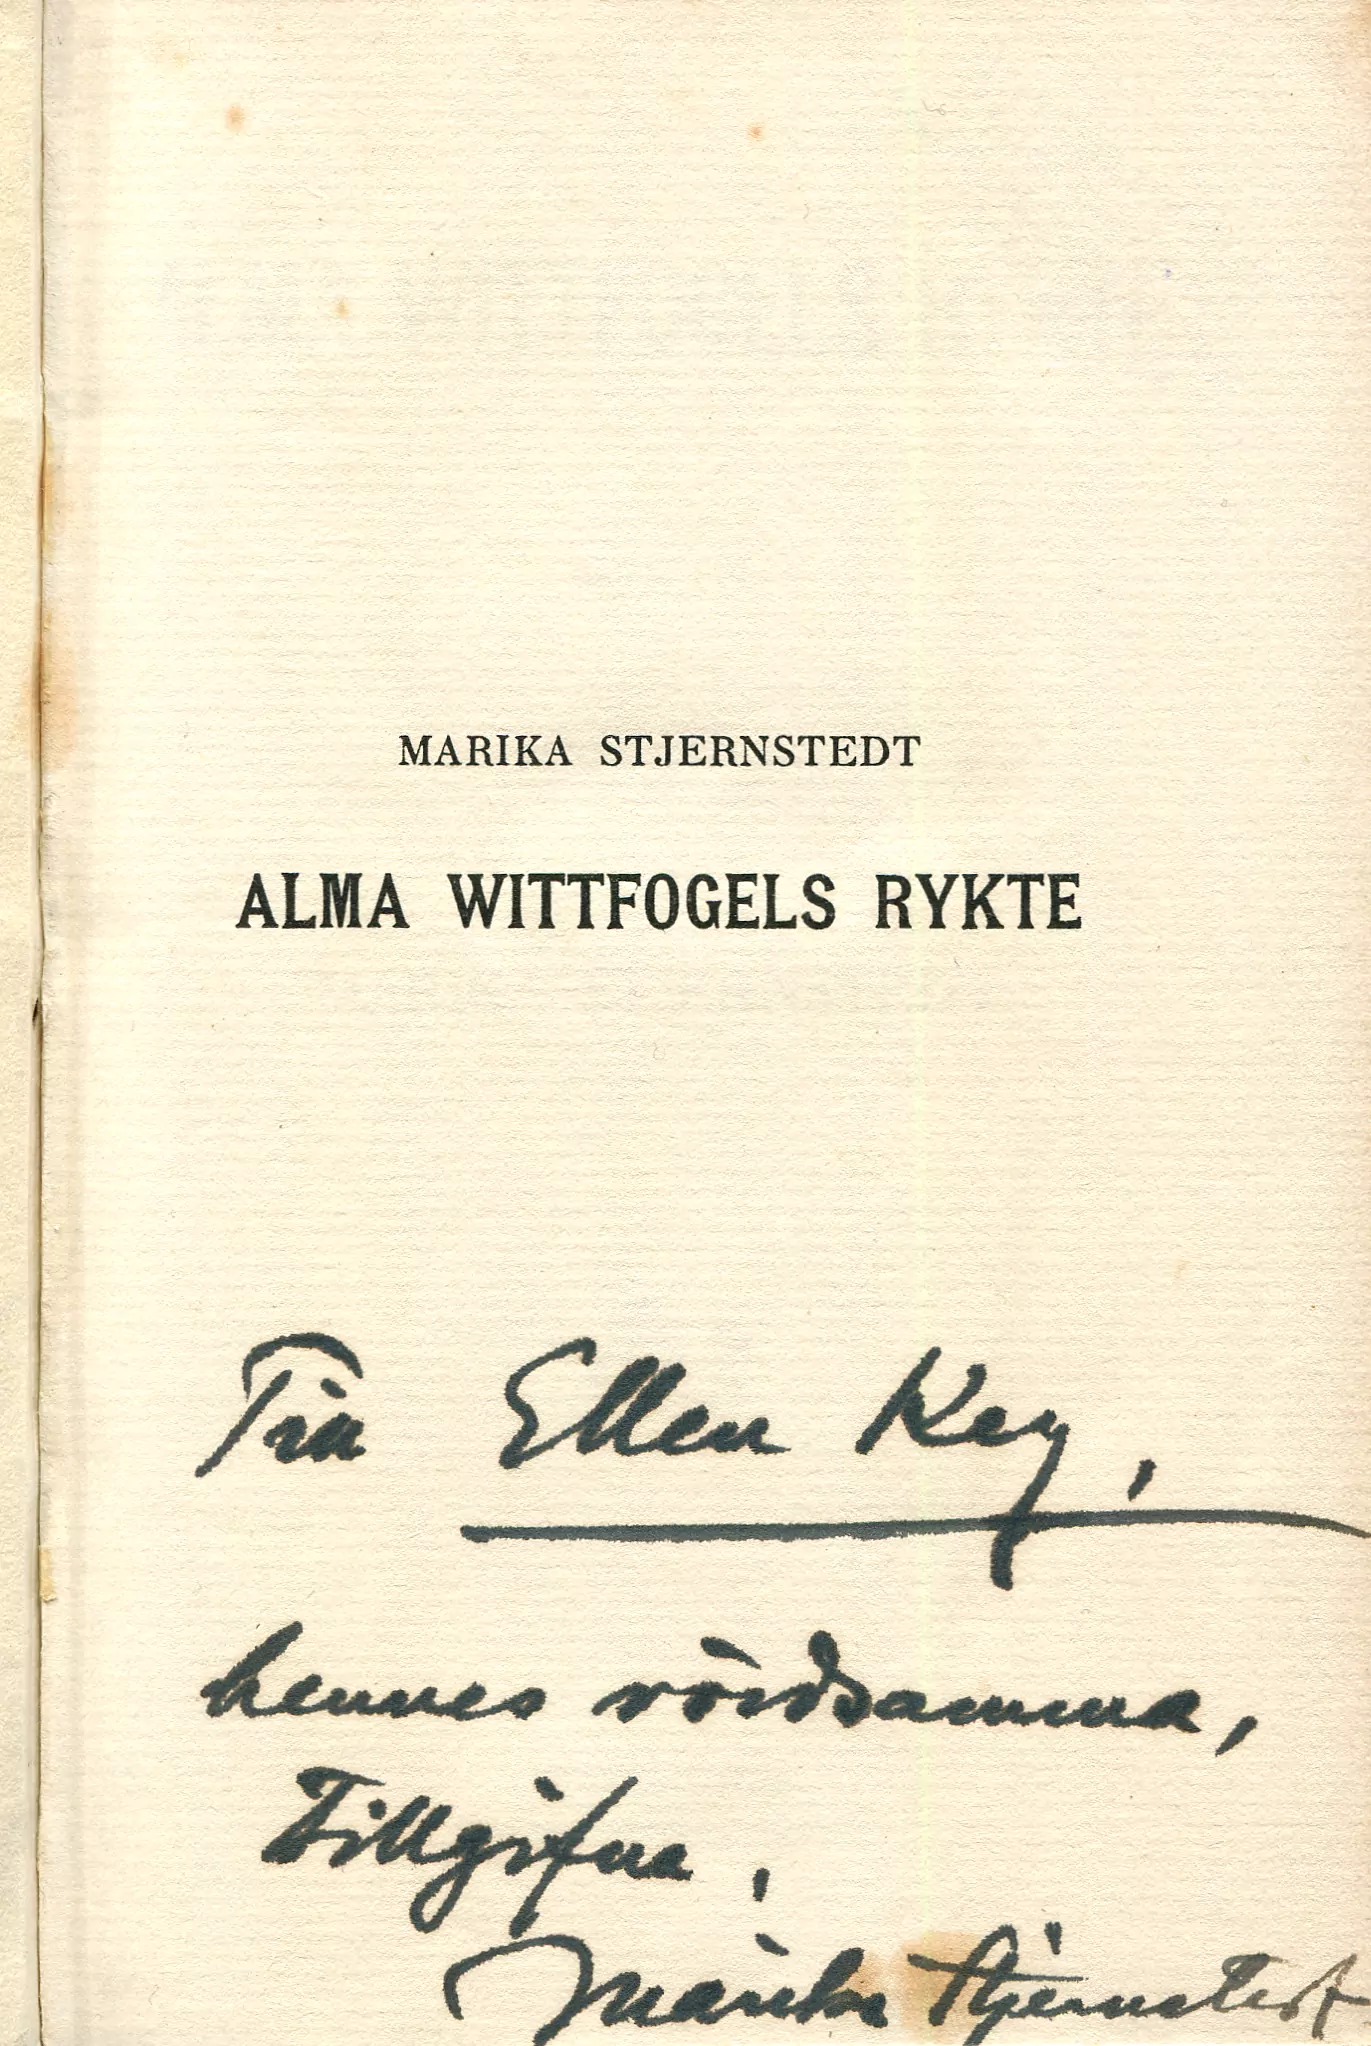 Alma Wittfogels rykte , Stockholm 1913